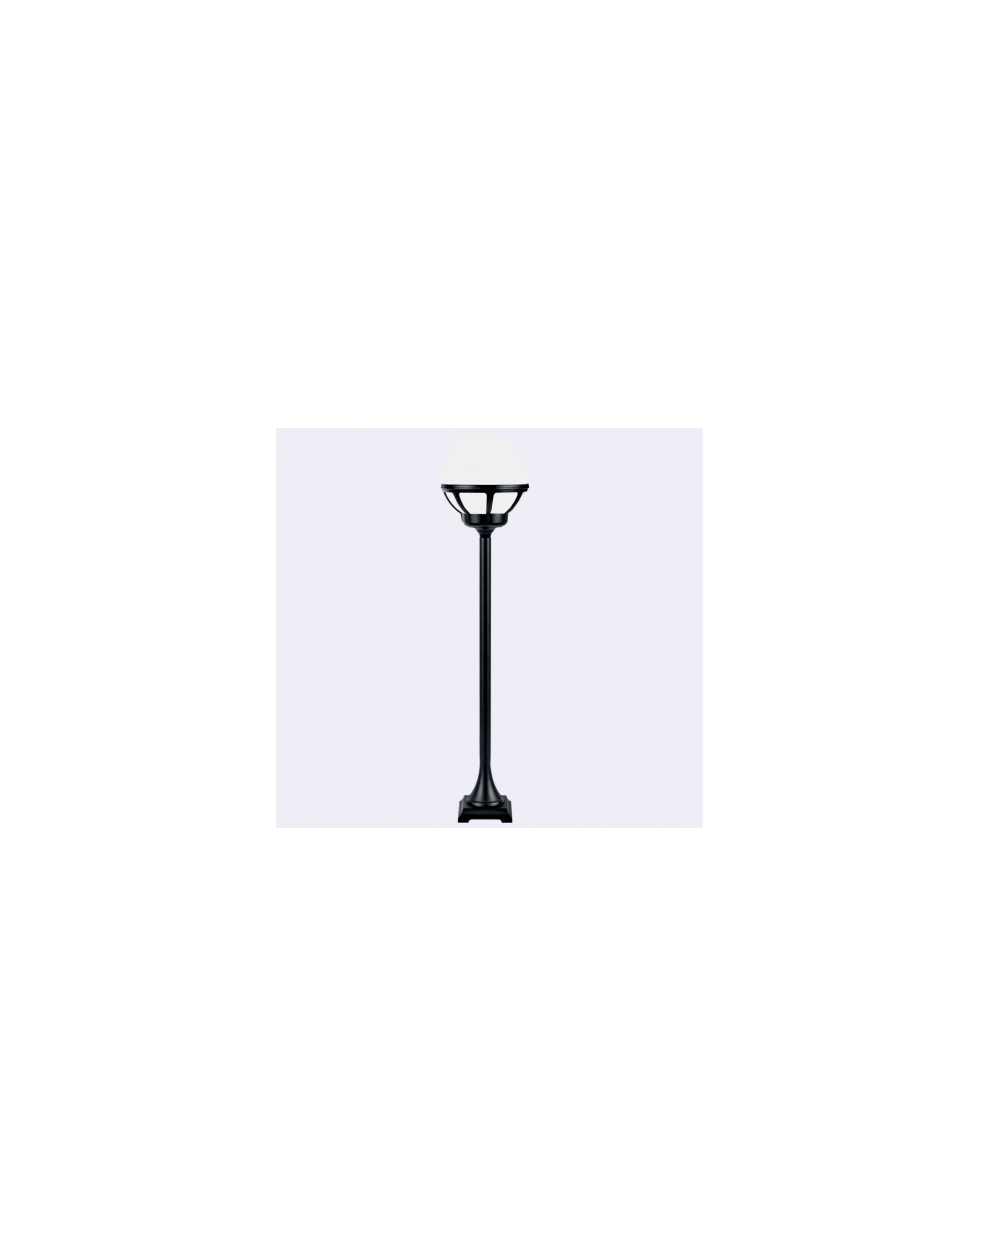 Lampa stojąca Bolonia klosz mleczny - Norlys zewnętrzna oprawa ogrodowa do oświetlania chodników tarasów ogrodów czarna biała